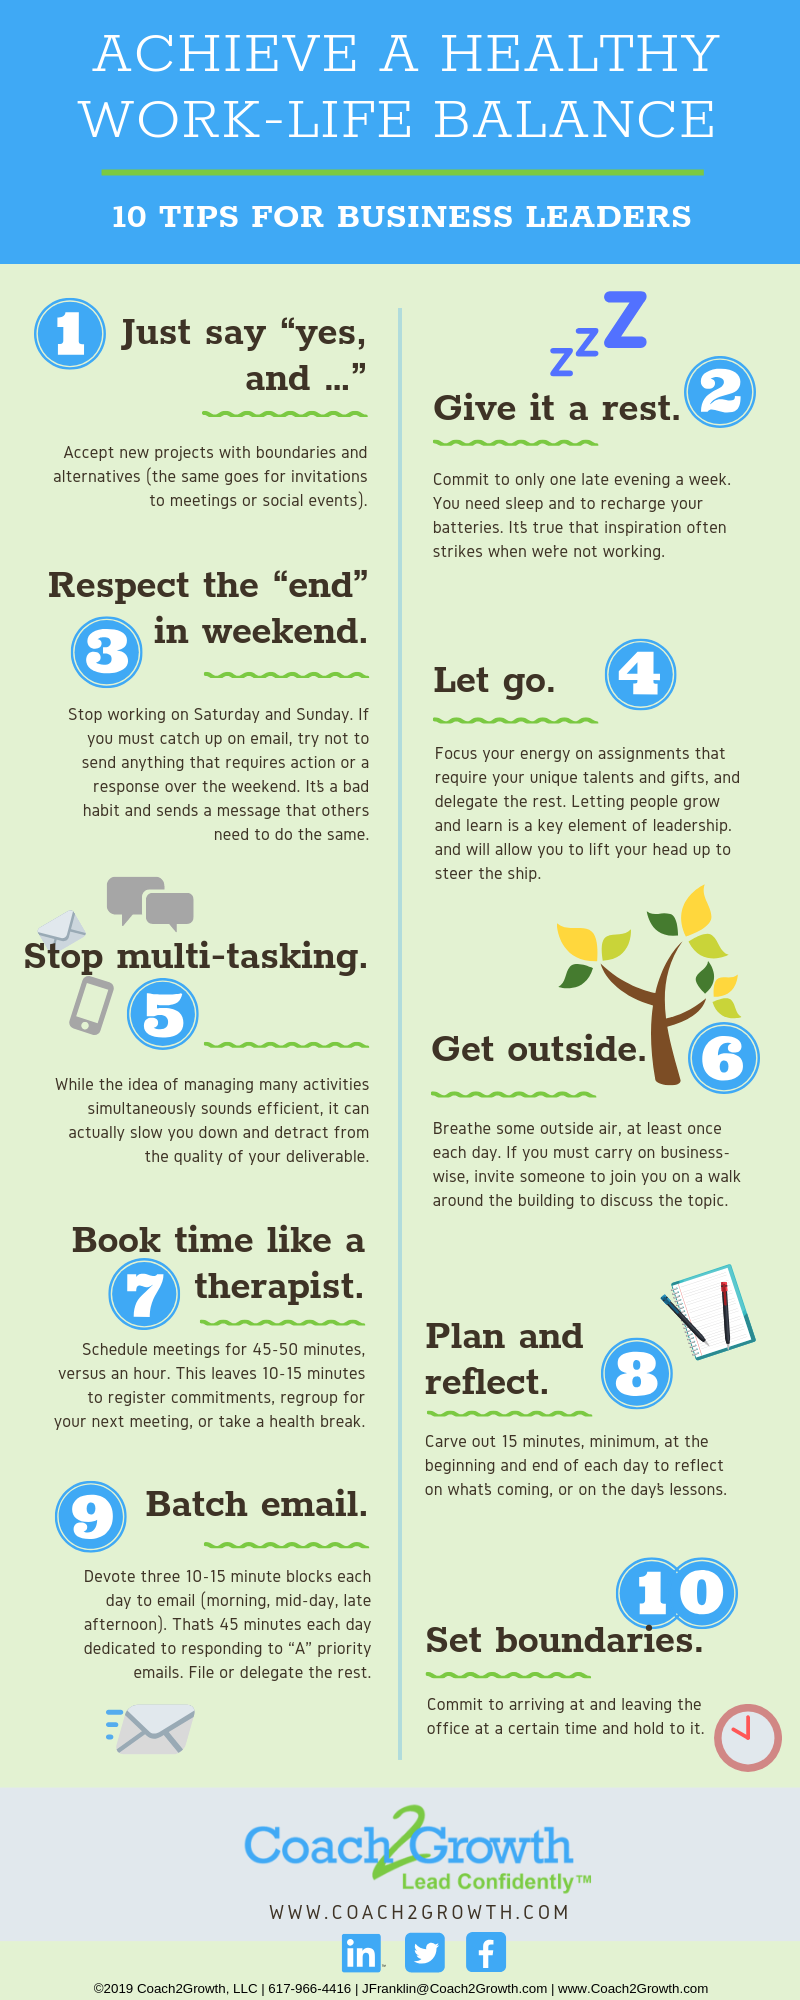 8 Tips for Work-Life Balance